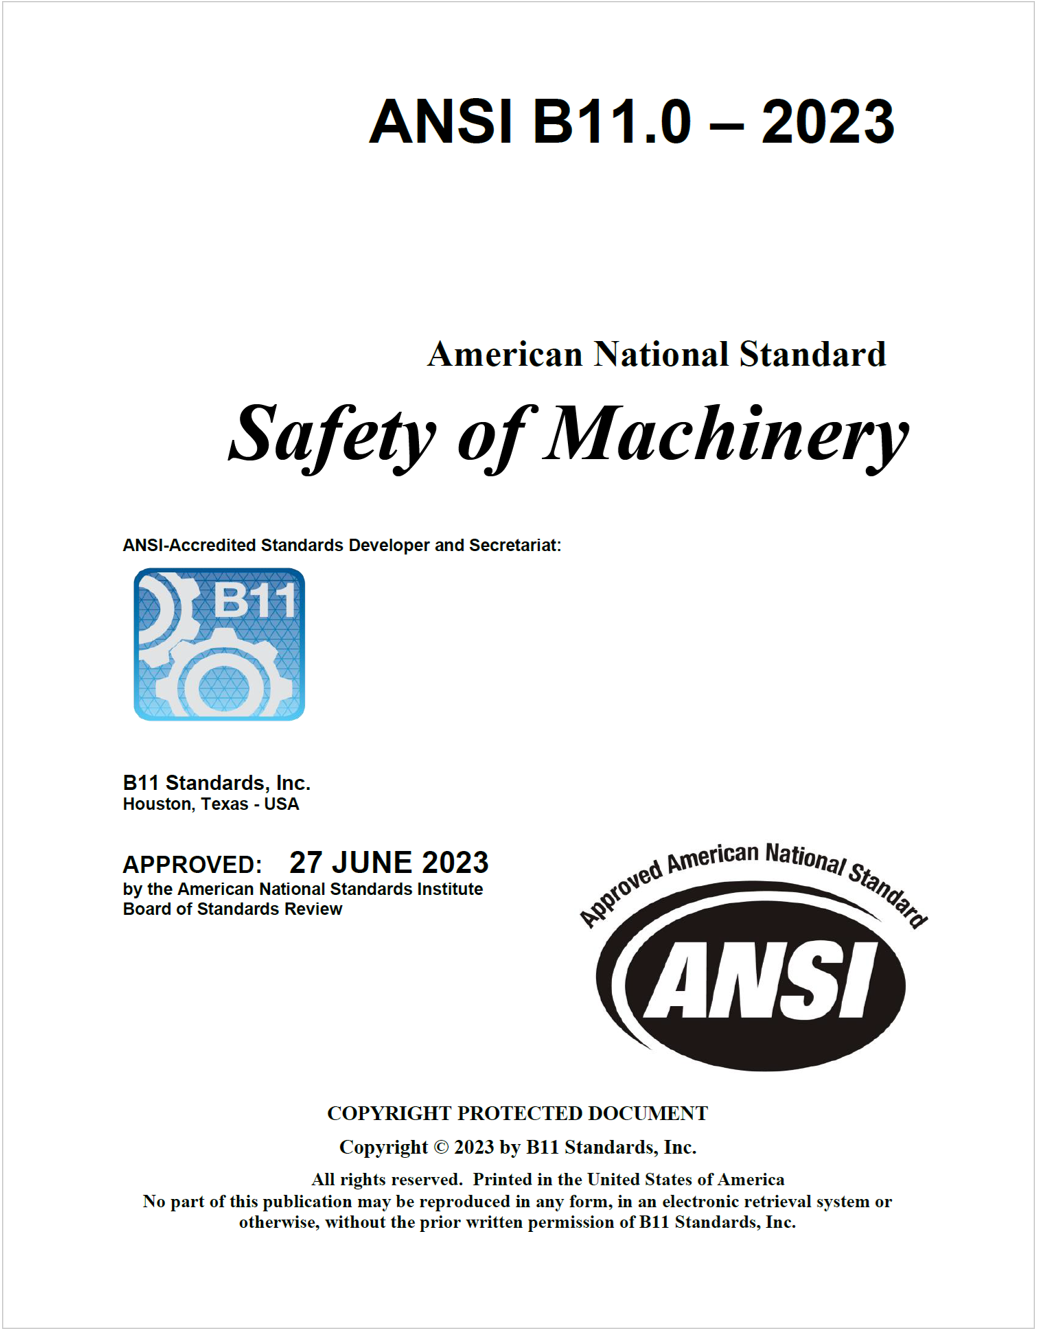 ANSI B11.0-2023 Safety of Machinery